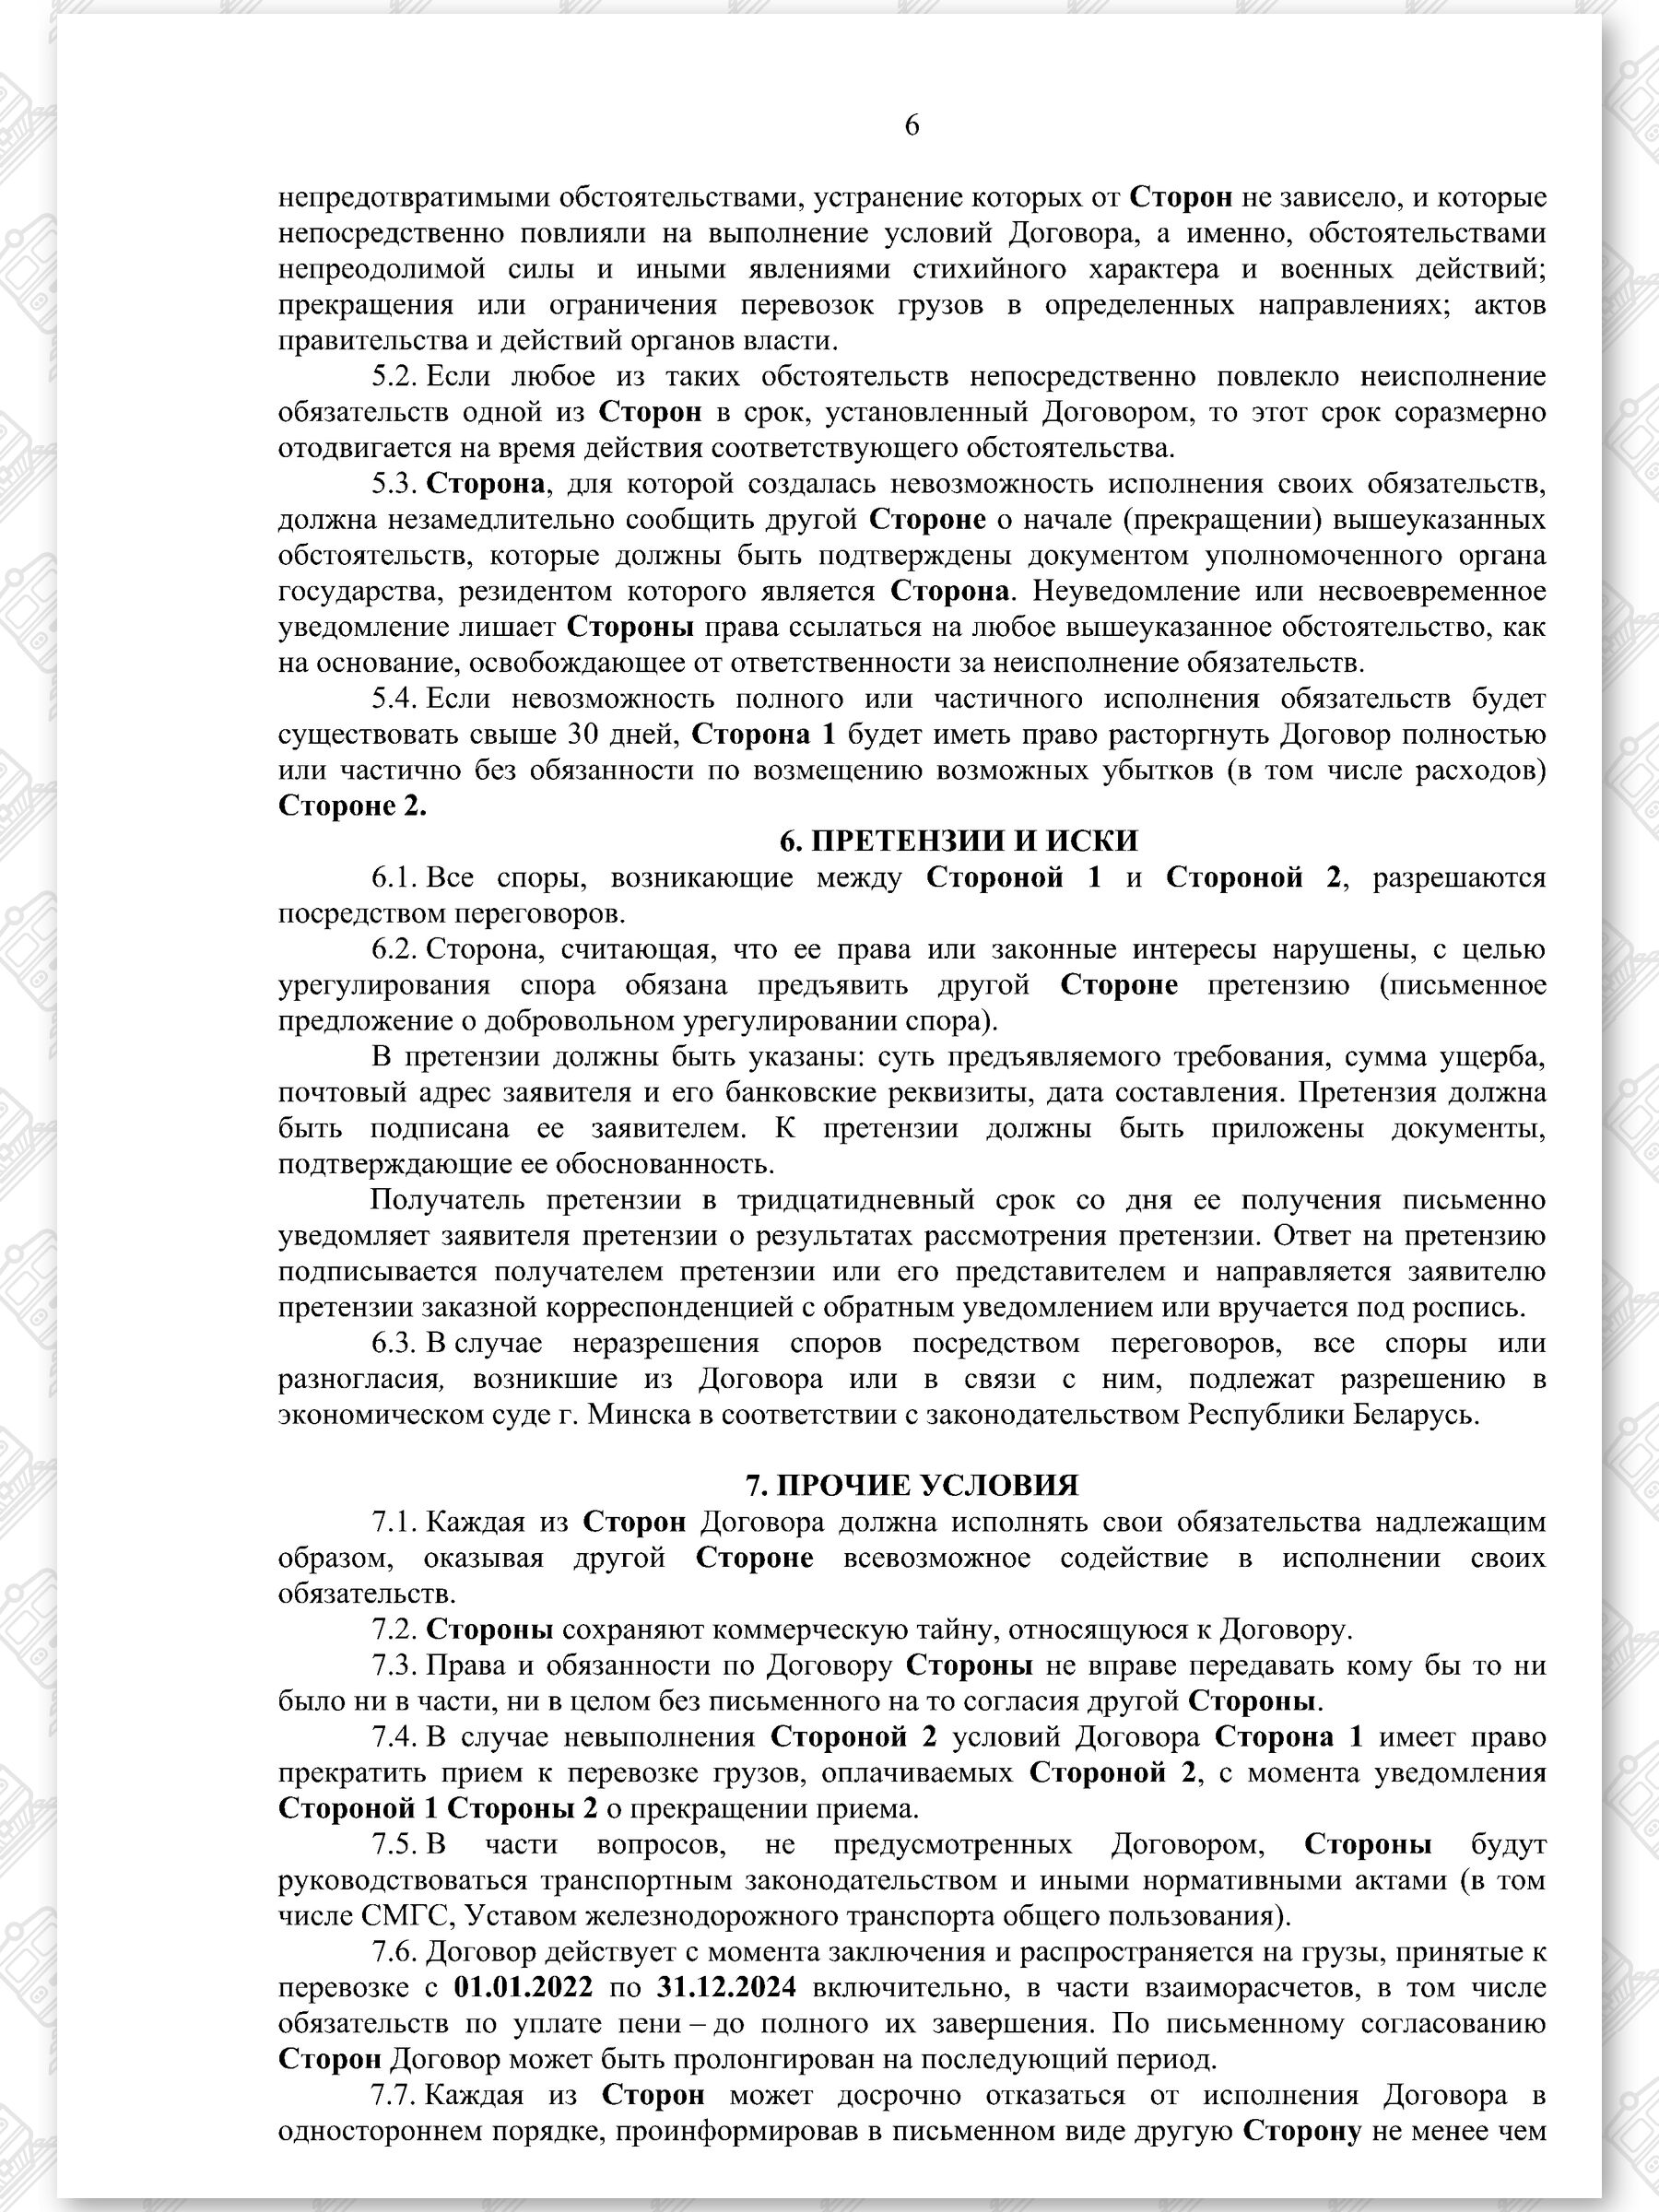 Договор на 2022 - 2024 гг. БЖД с ООО «ТранскоЭнерджи» (Страница 6)